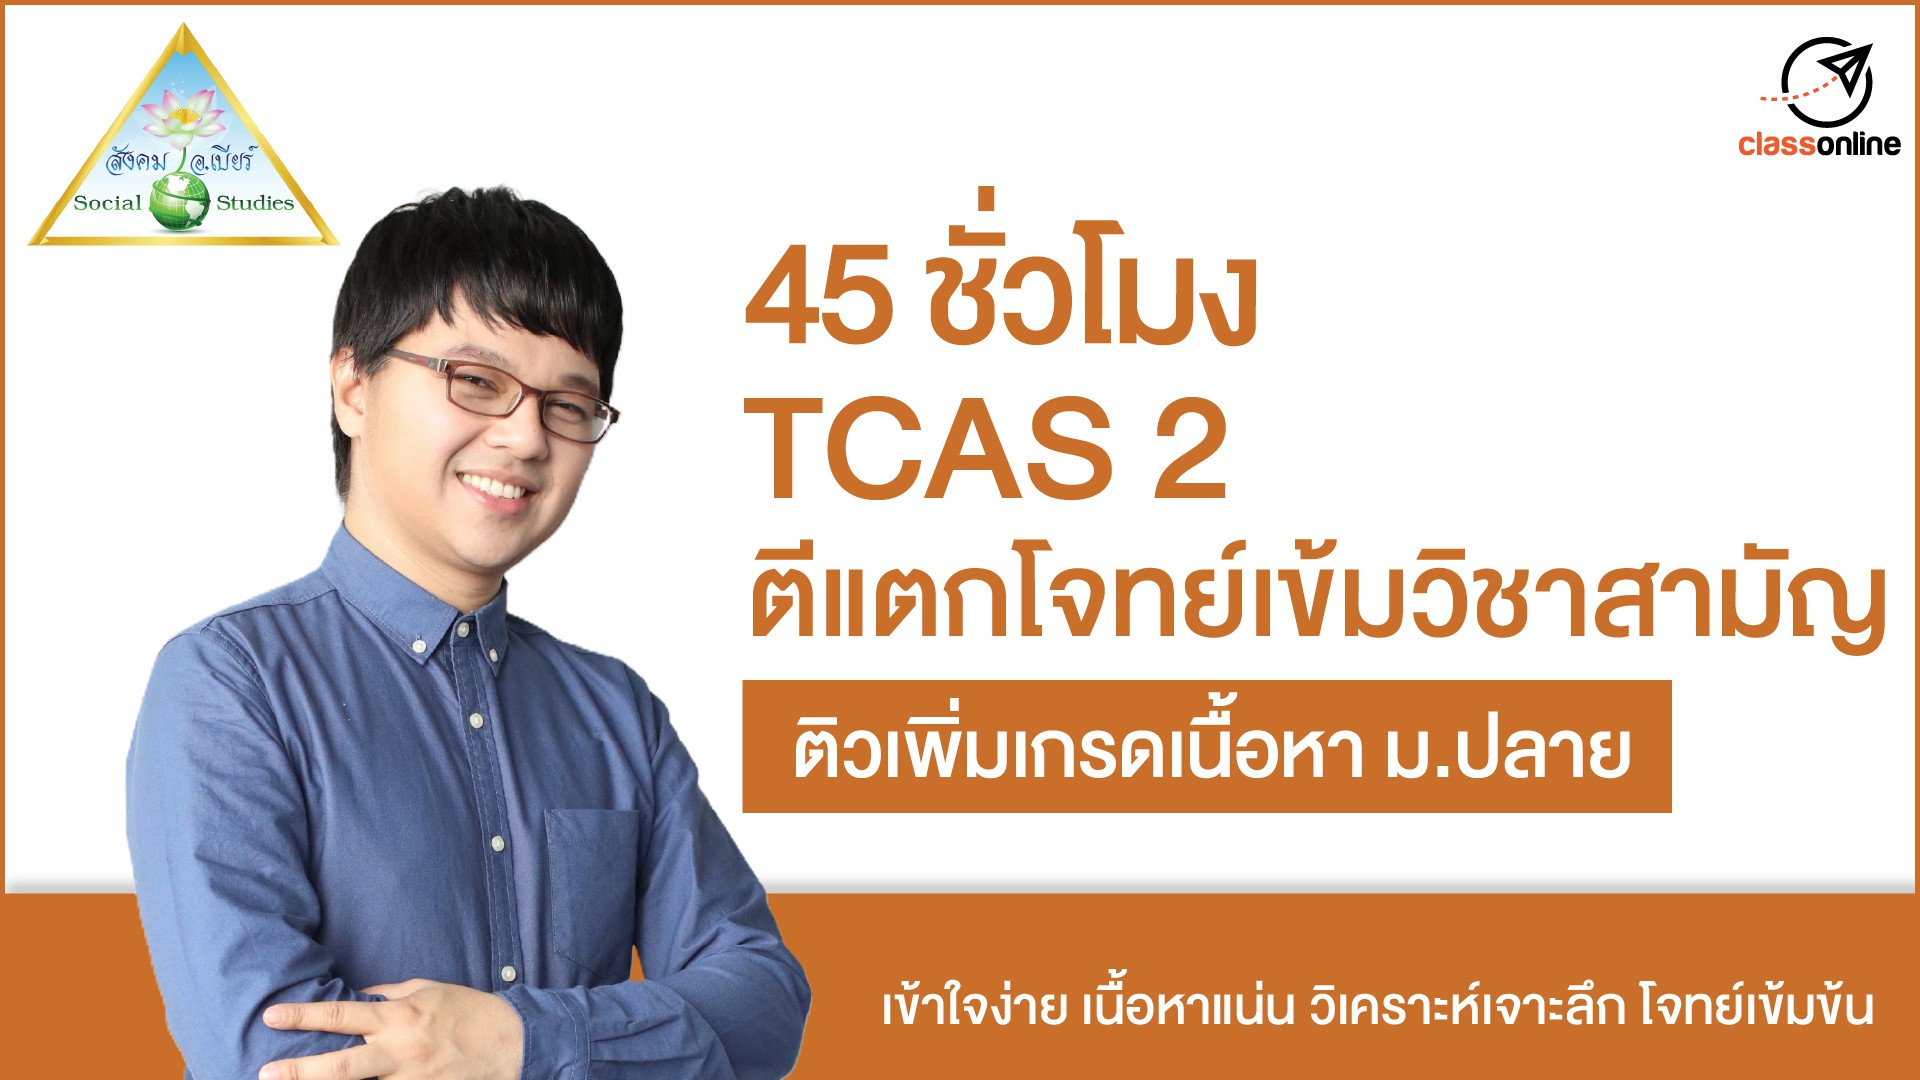 TCAS 2 ตีแตกโจทย์เข้มวิชาสามัญ